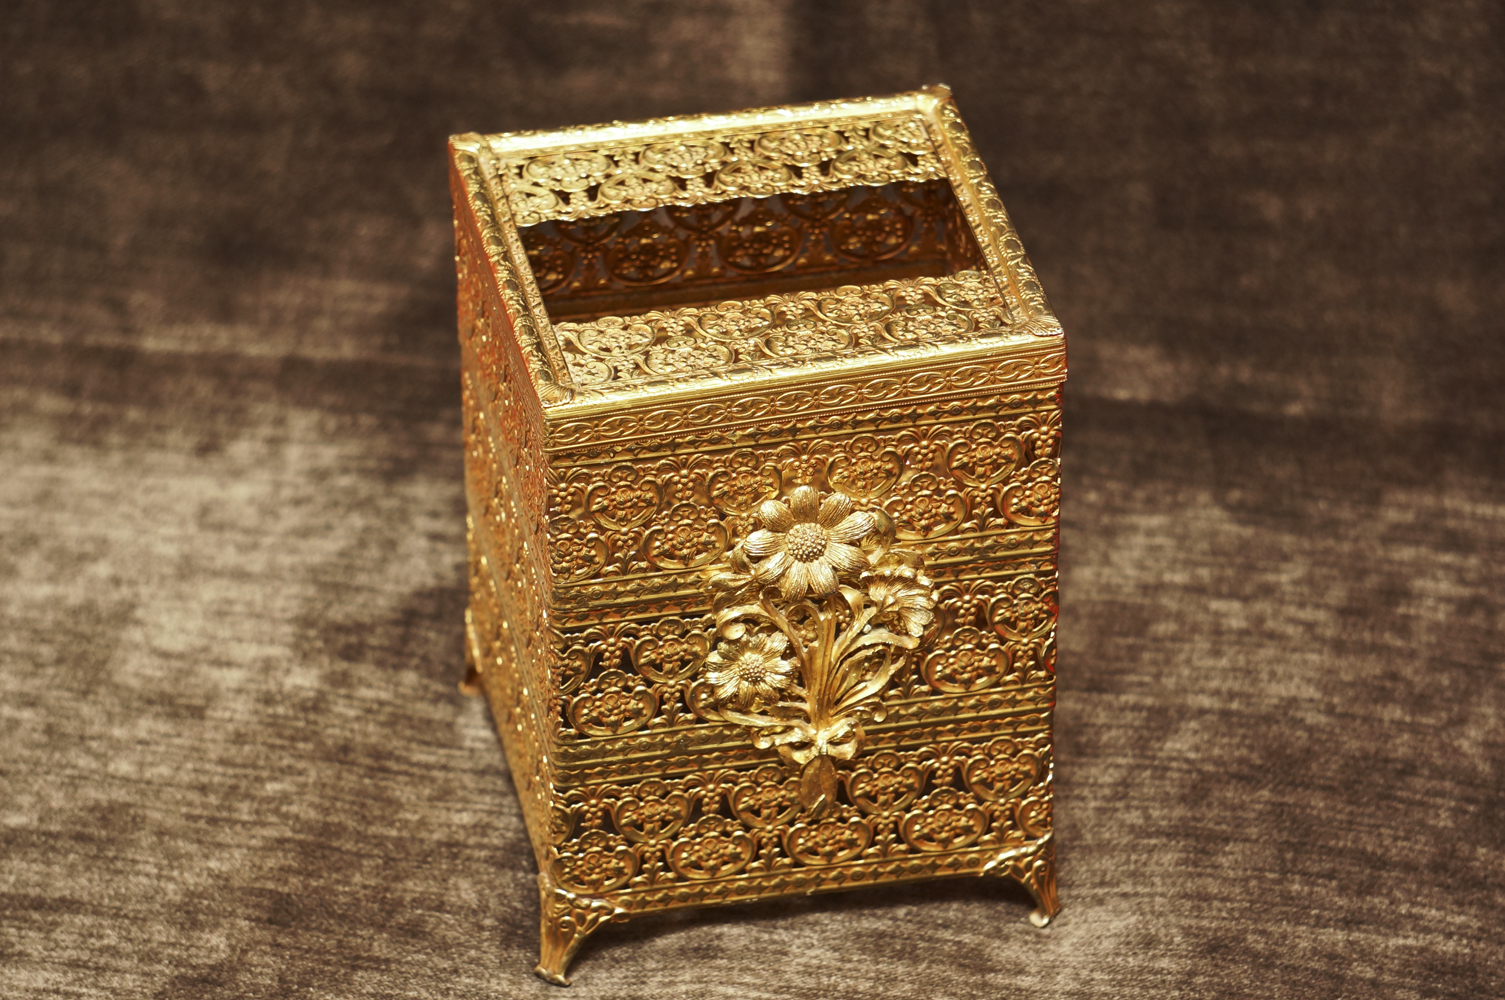 Sold:マトソン製 ゴールド フラワーブーケ脚付き 正方形ティッシュボックス